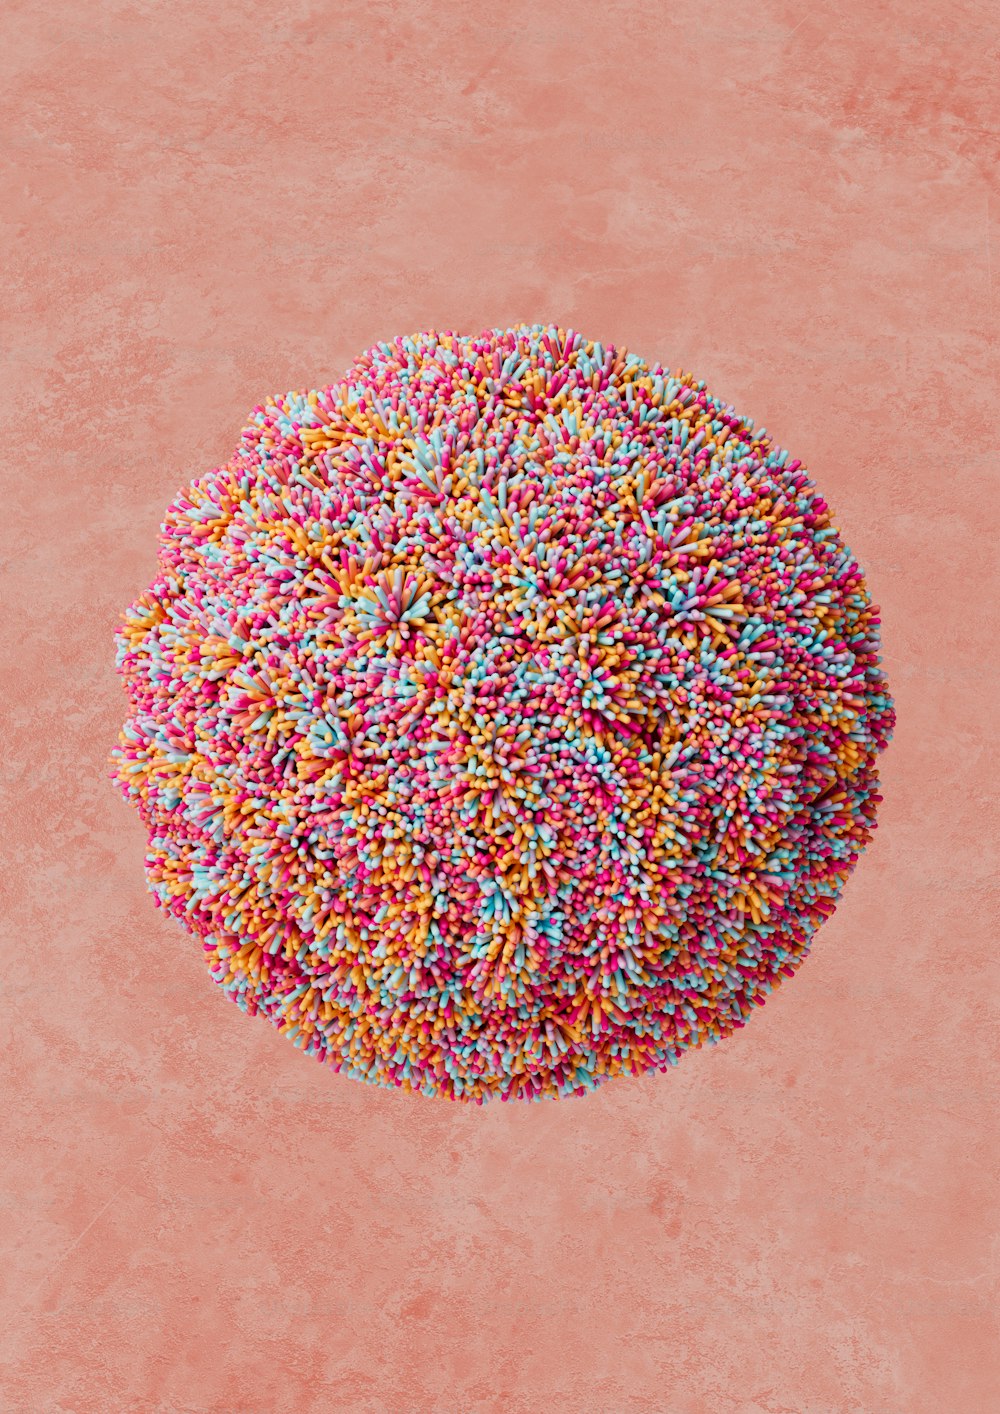 1K+ Colores Pastel Imágenes  Descargar imágenes gratis en Unsplash